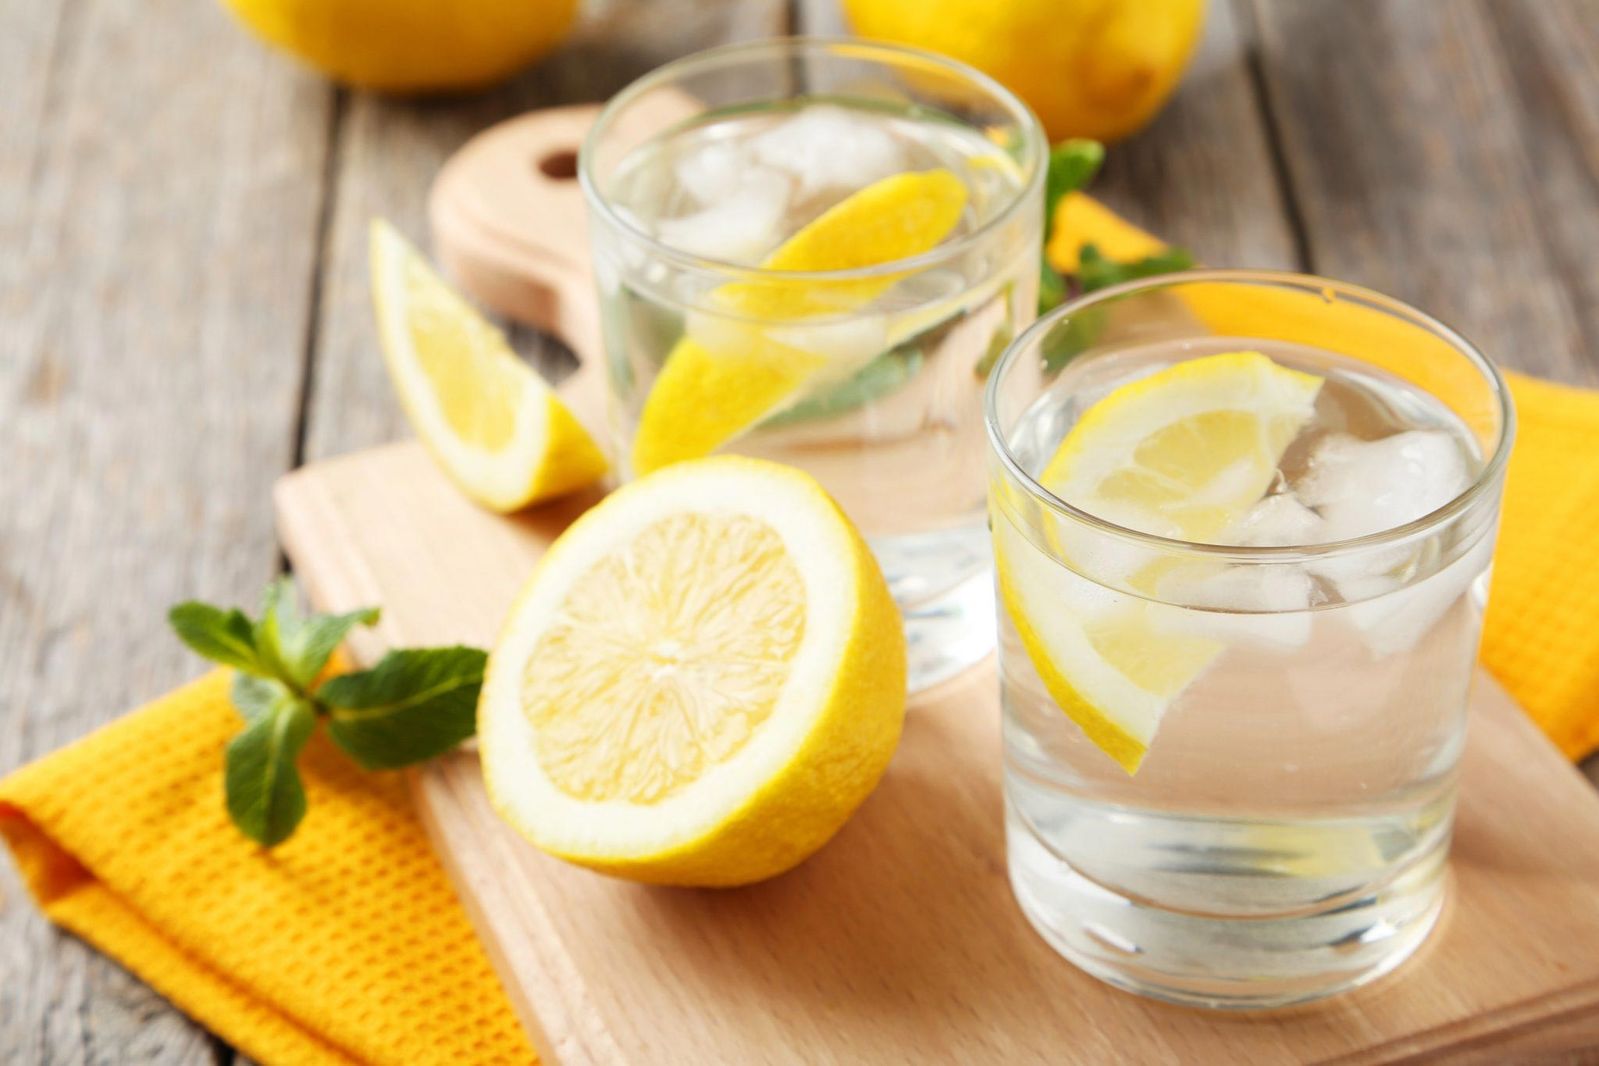 recepty prigotovleniya vody s limonom dlya pokhudeniya, obzor otzyvov ob ehffektivnosti i polze36 Рецепти приготування води з лимоном для схуднення, огляд відгуків про ефективність і користь